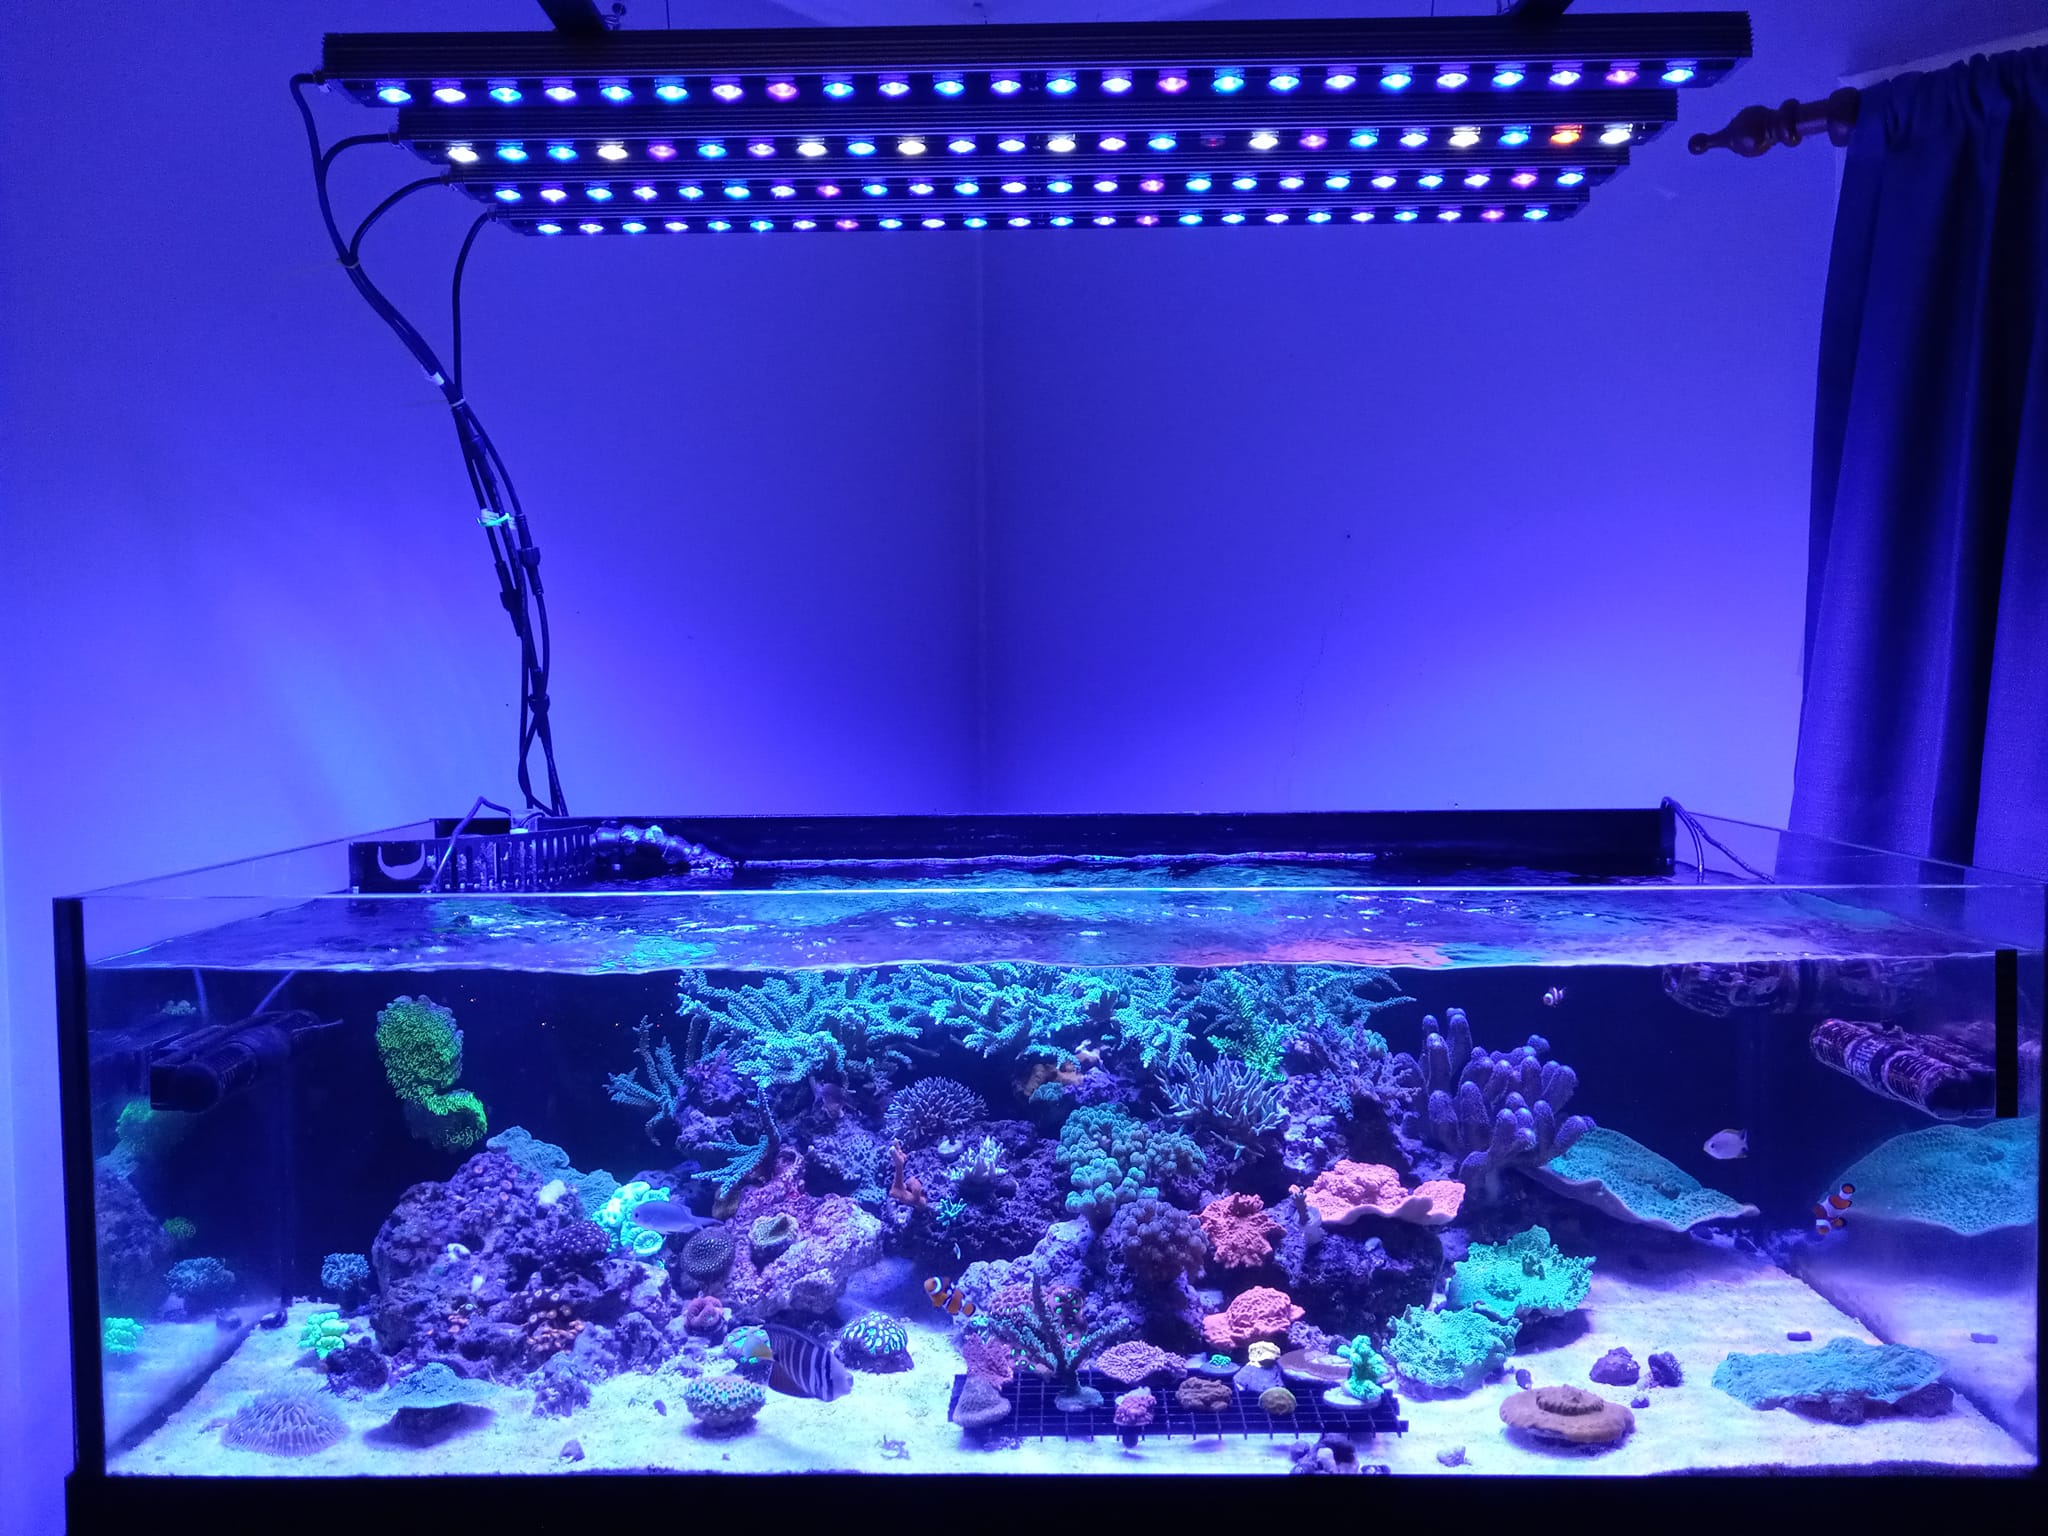 4-orphek-Or3-reef-acquarium-led-lighting-